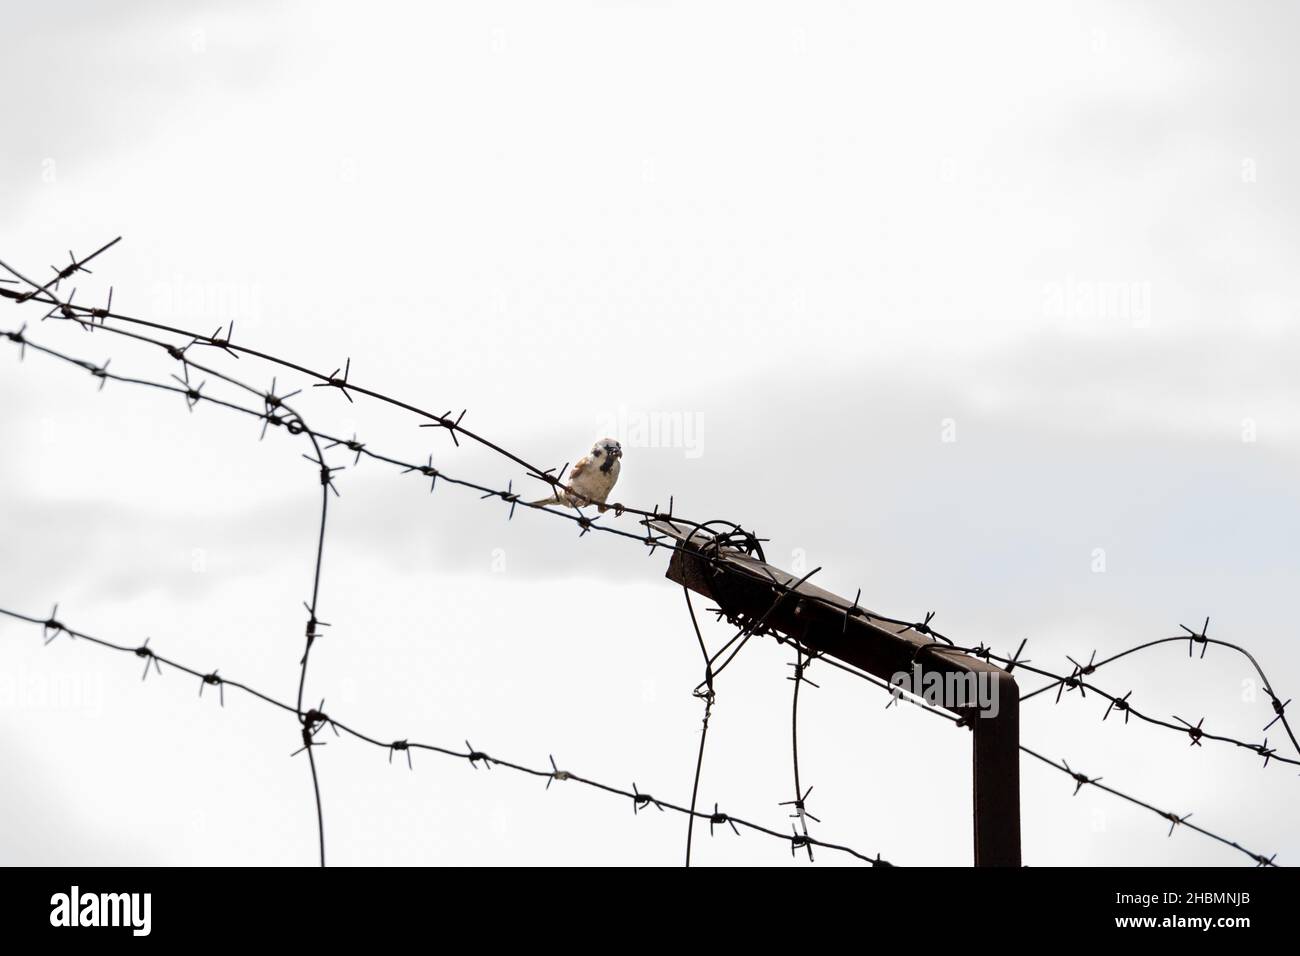 Ein Sperling, der auf einem Stacheldraht gegen einen dunklen Himmel sitzt, Konzeptfotografie Stockfoto